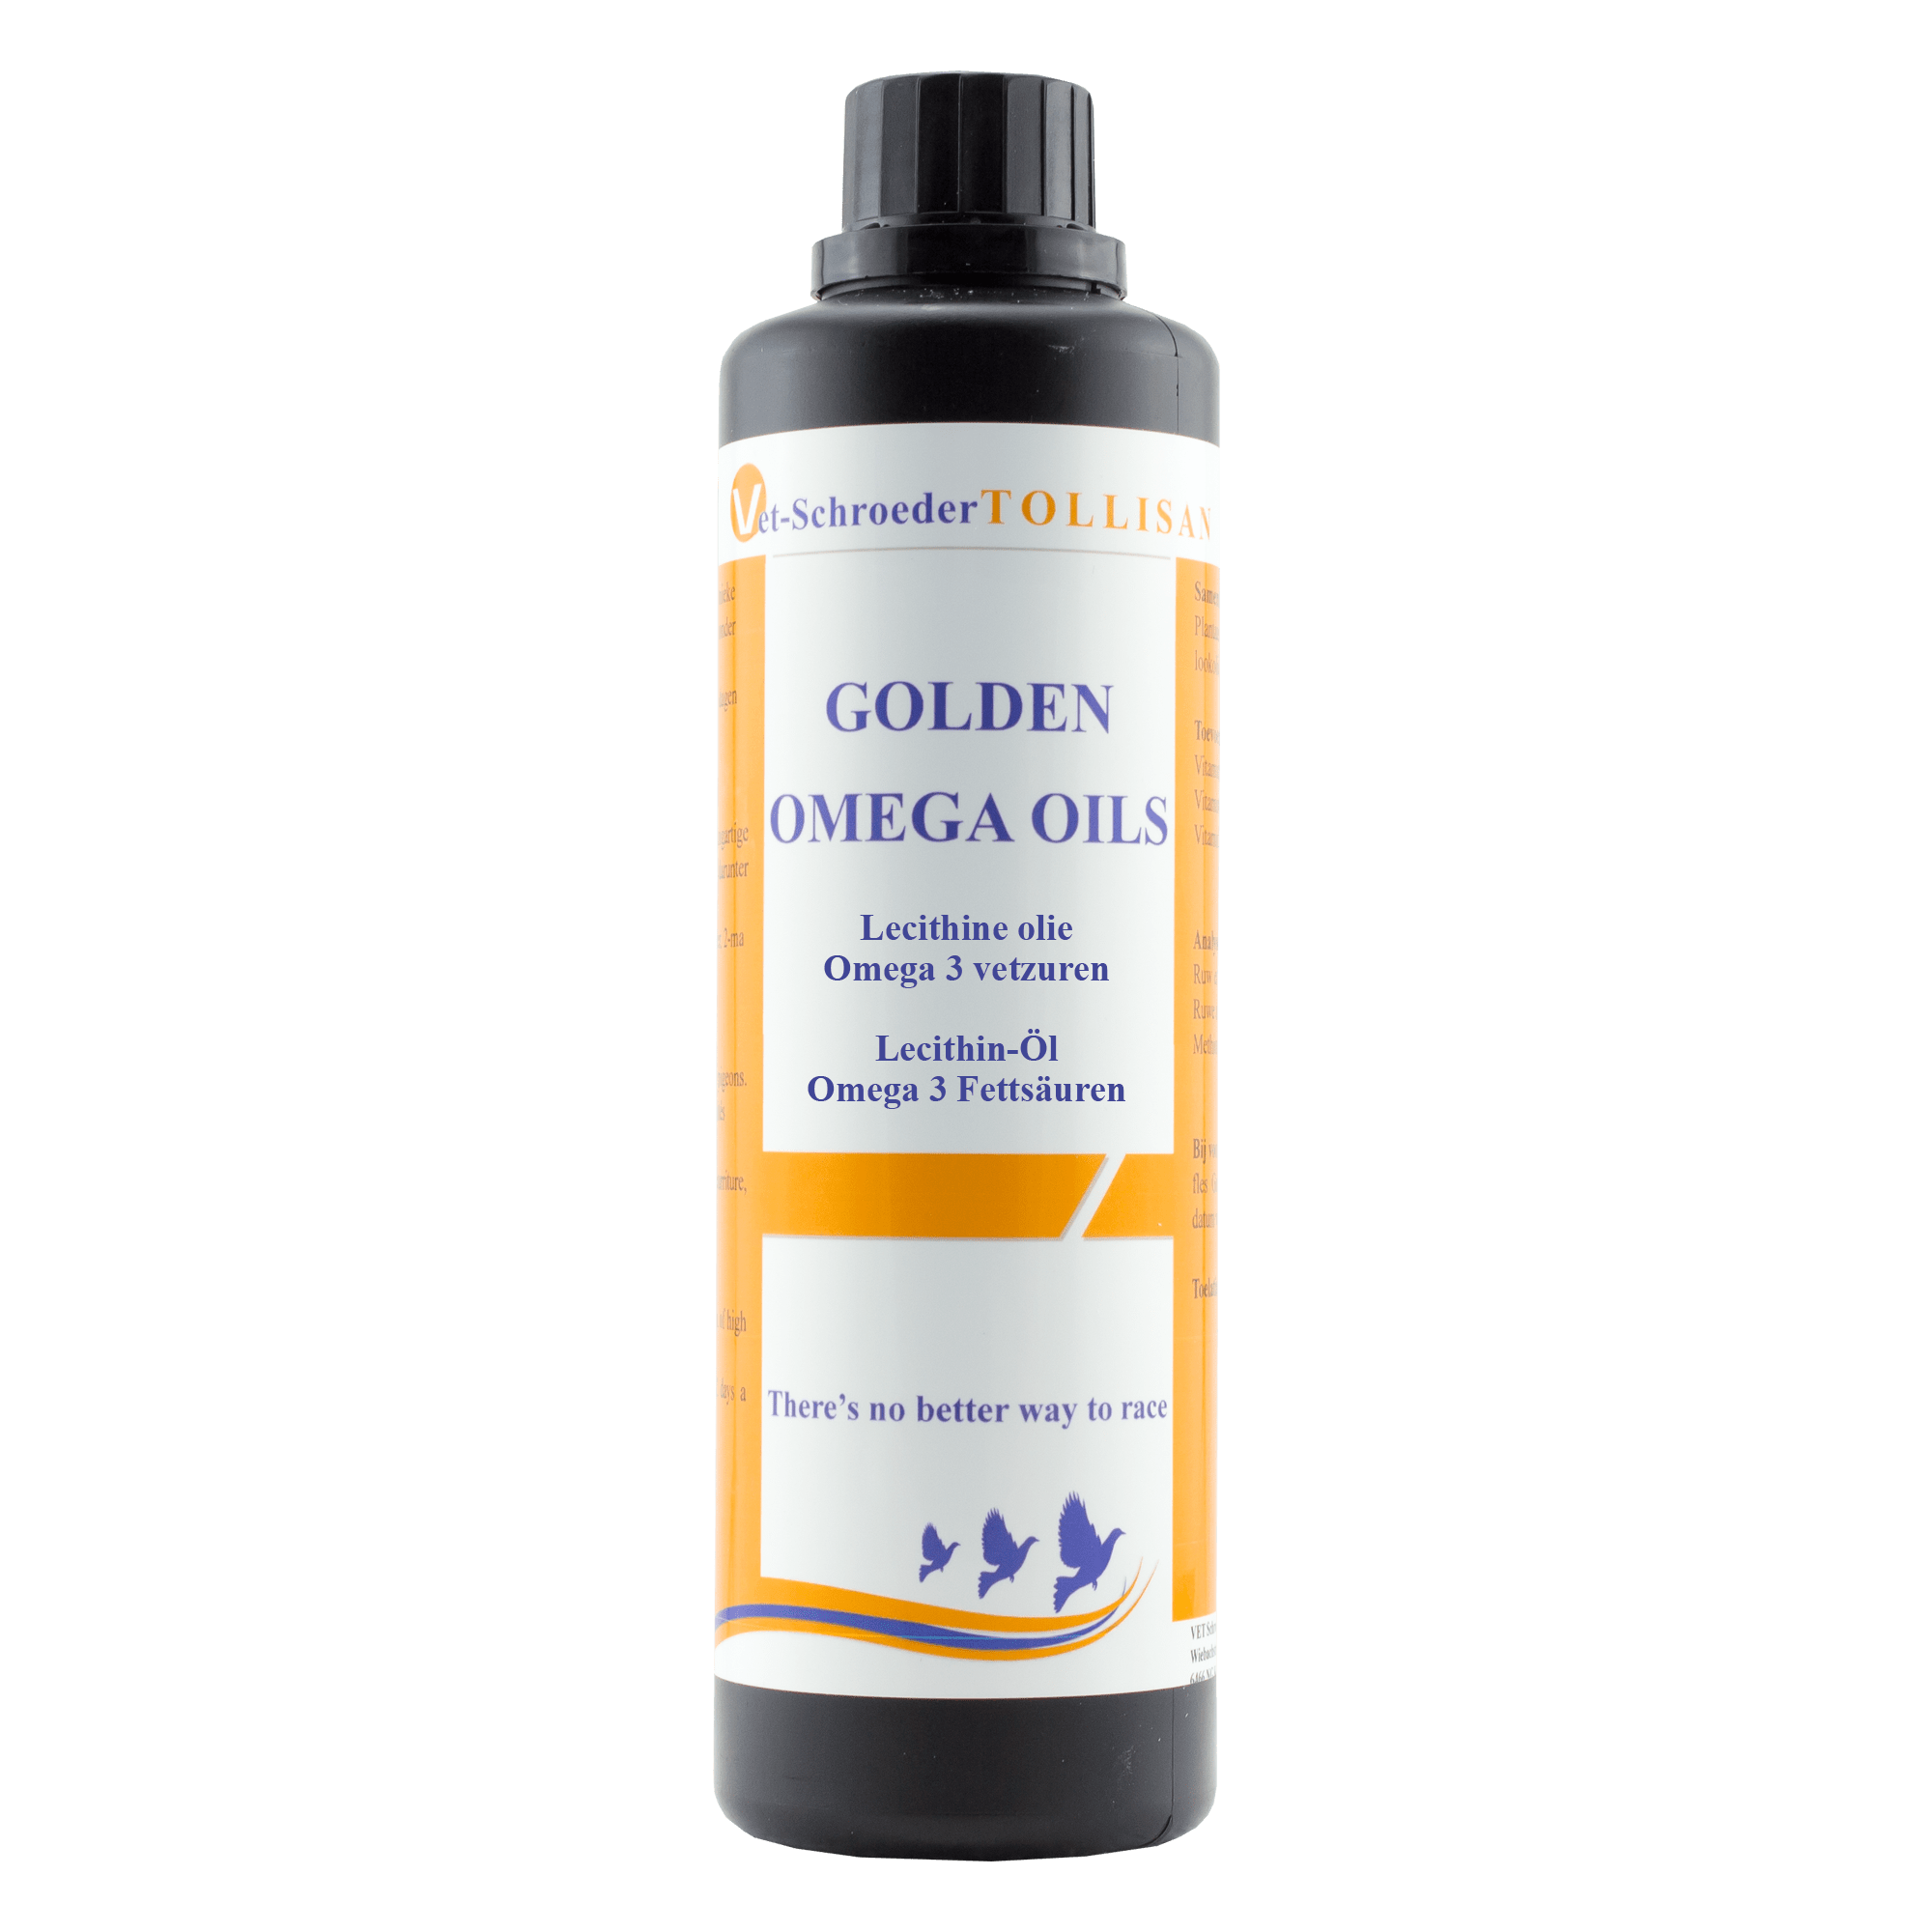 Golden omega oils Tolisan